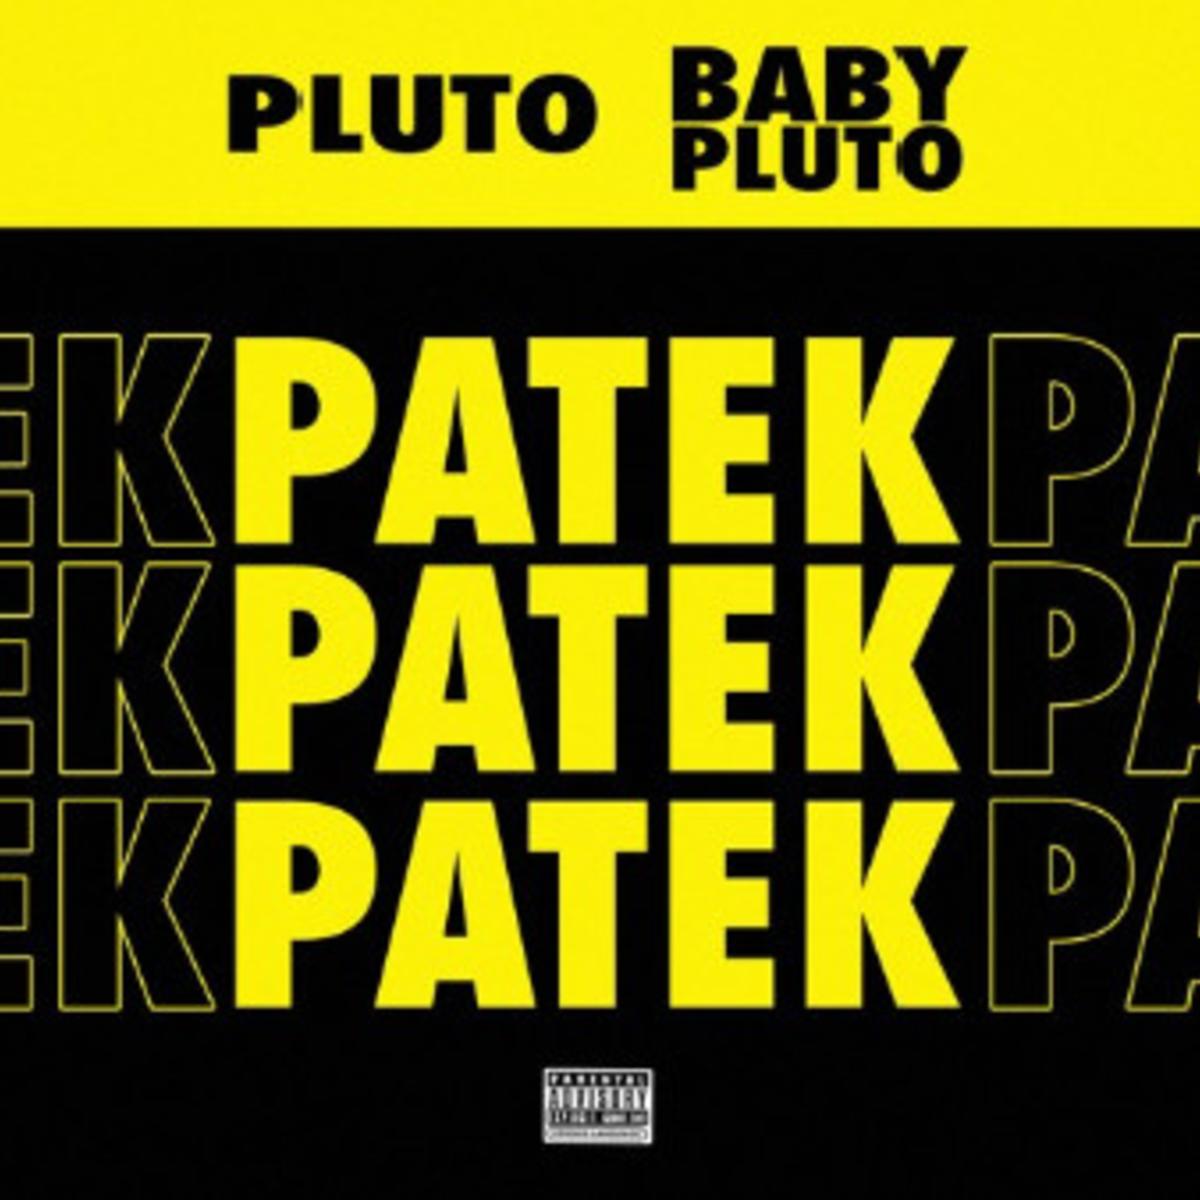 Lil Uzi Vert & Future Drop “Patek”